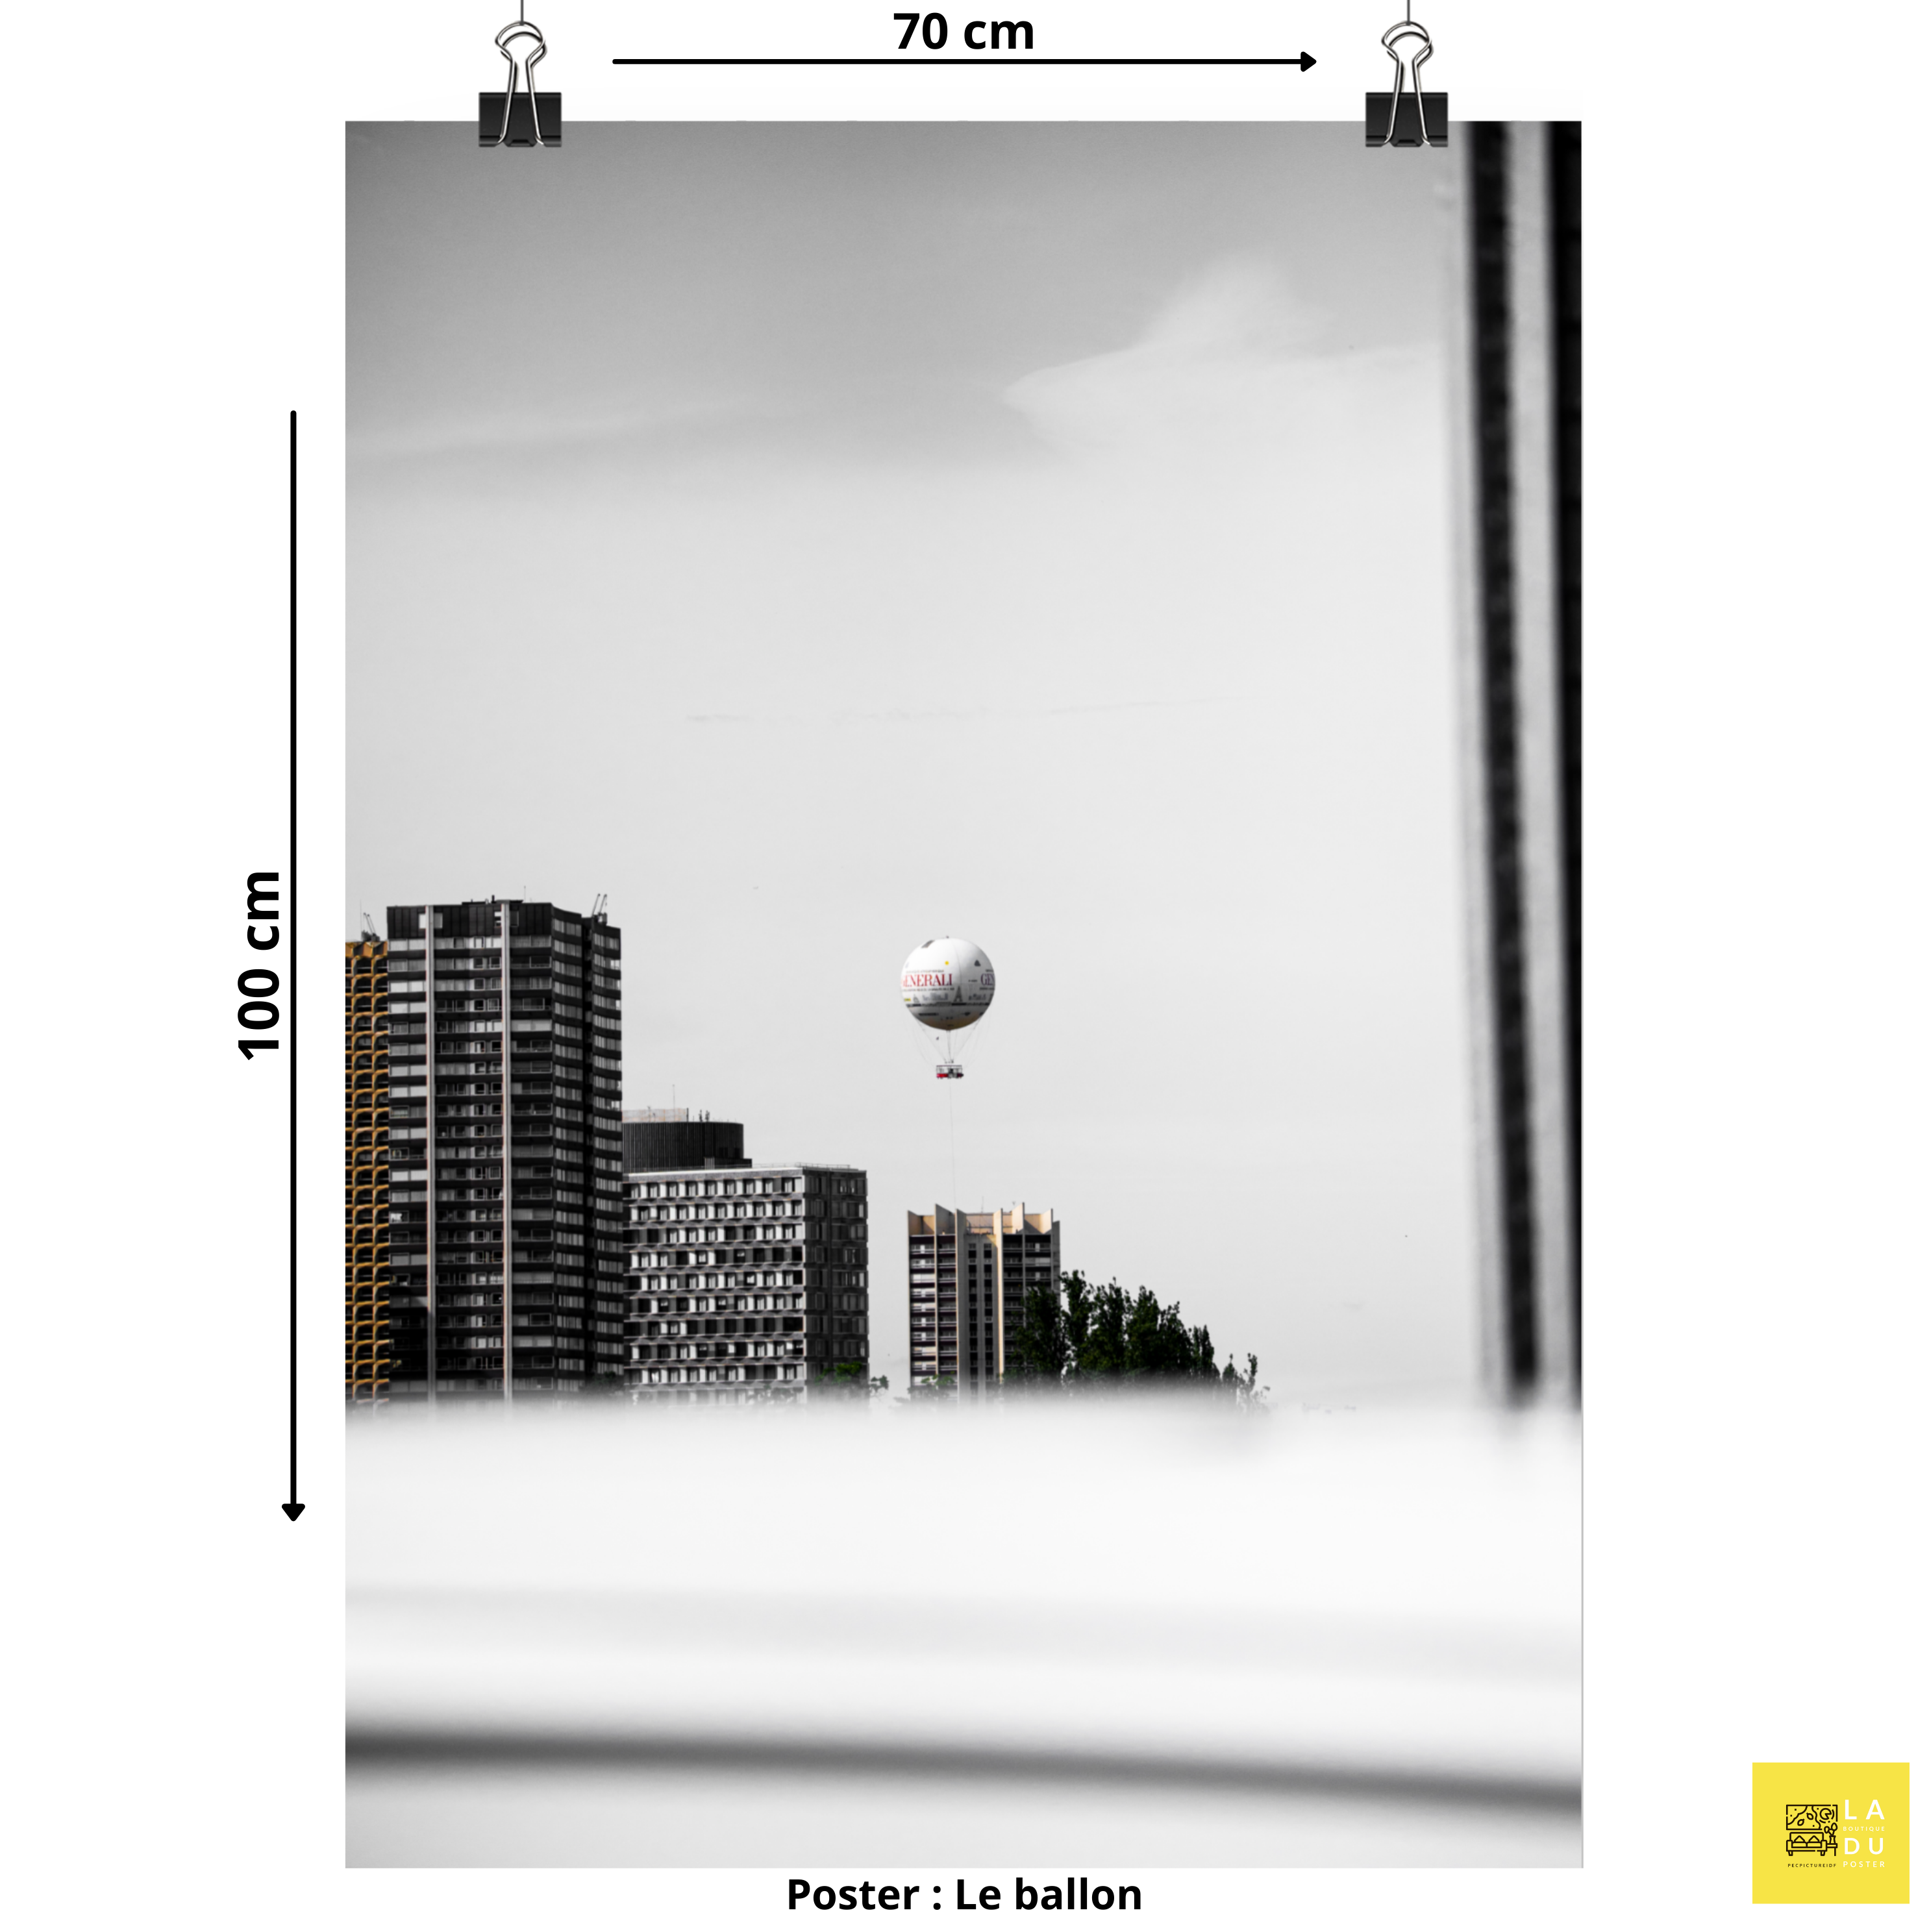 La montgolfière de paris - Poster - La boutique du poster Français